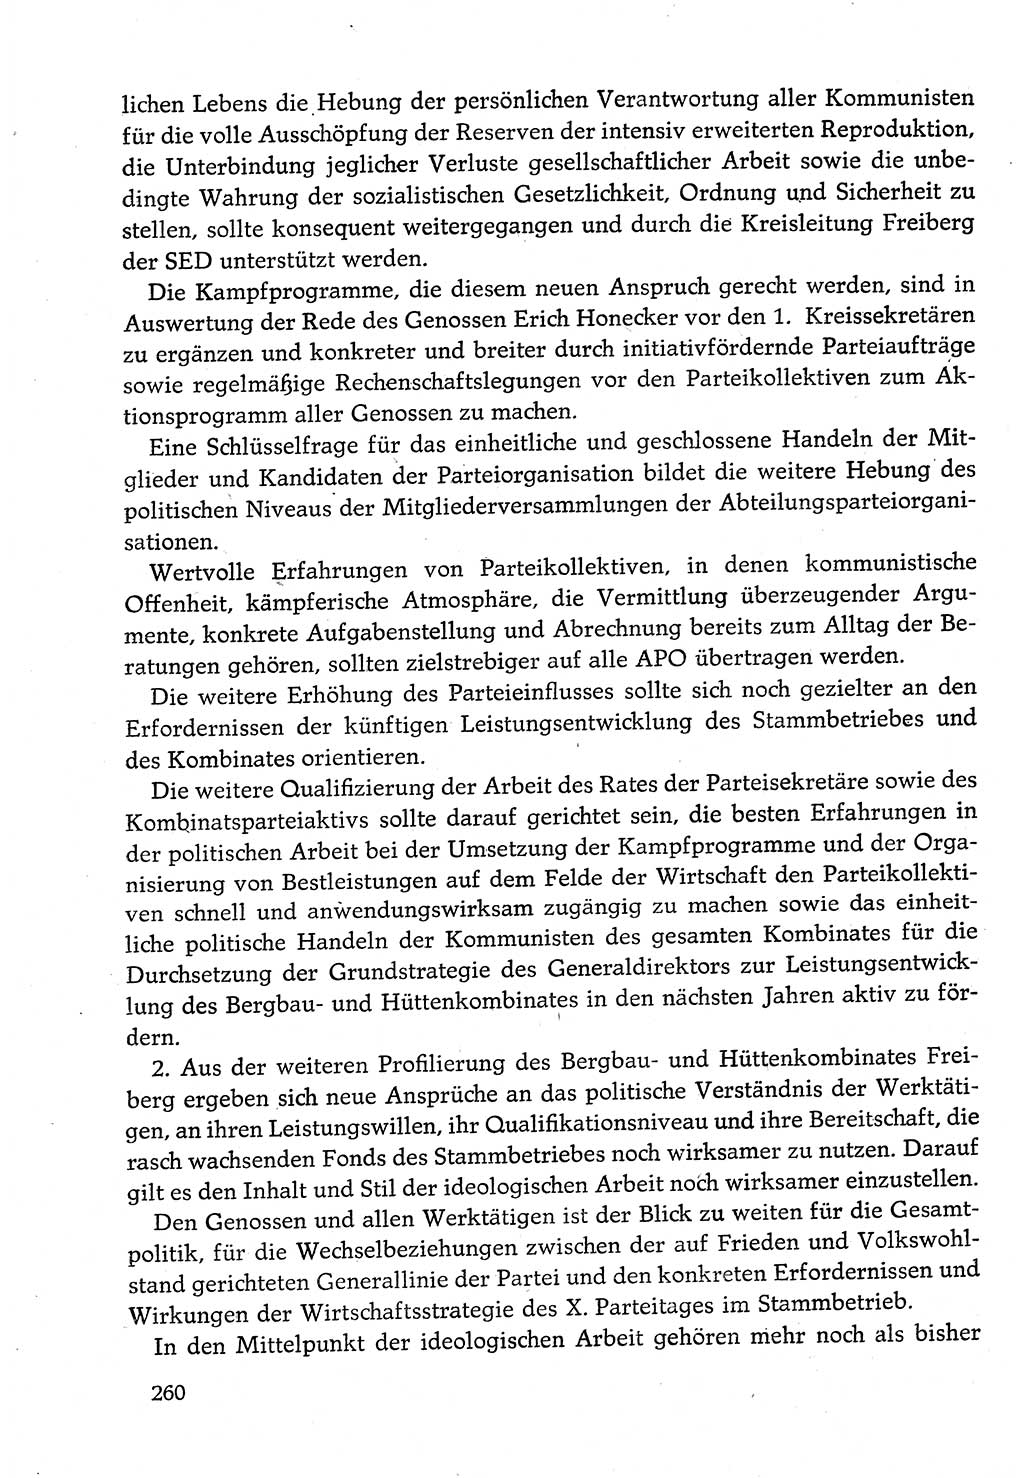 Dokumente der Sozialistischen Einheitspartei Deutschlands (SED) [Deutsche Demokratische Republik (DDR)] 1982-1983, Seite 260 (Dok. SED DDR 1982-1983, S. 260)